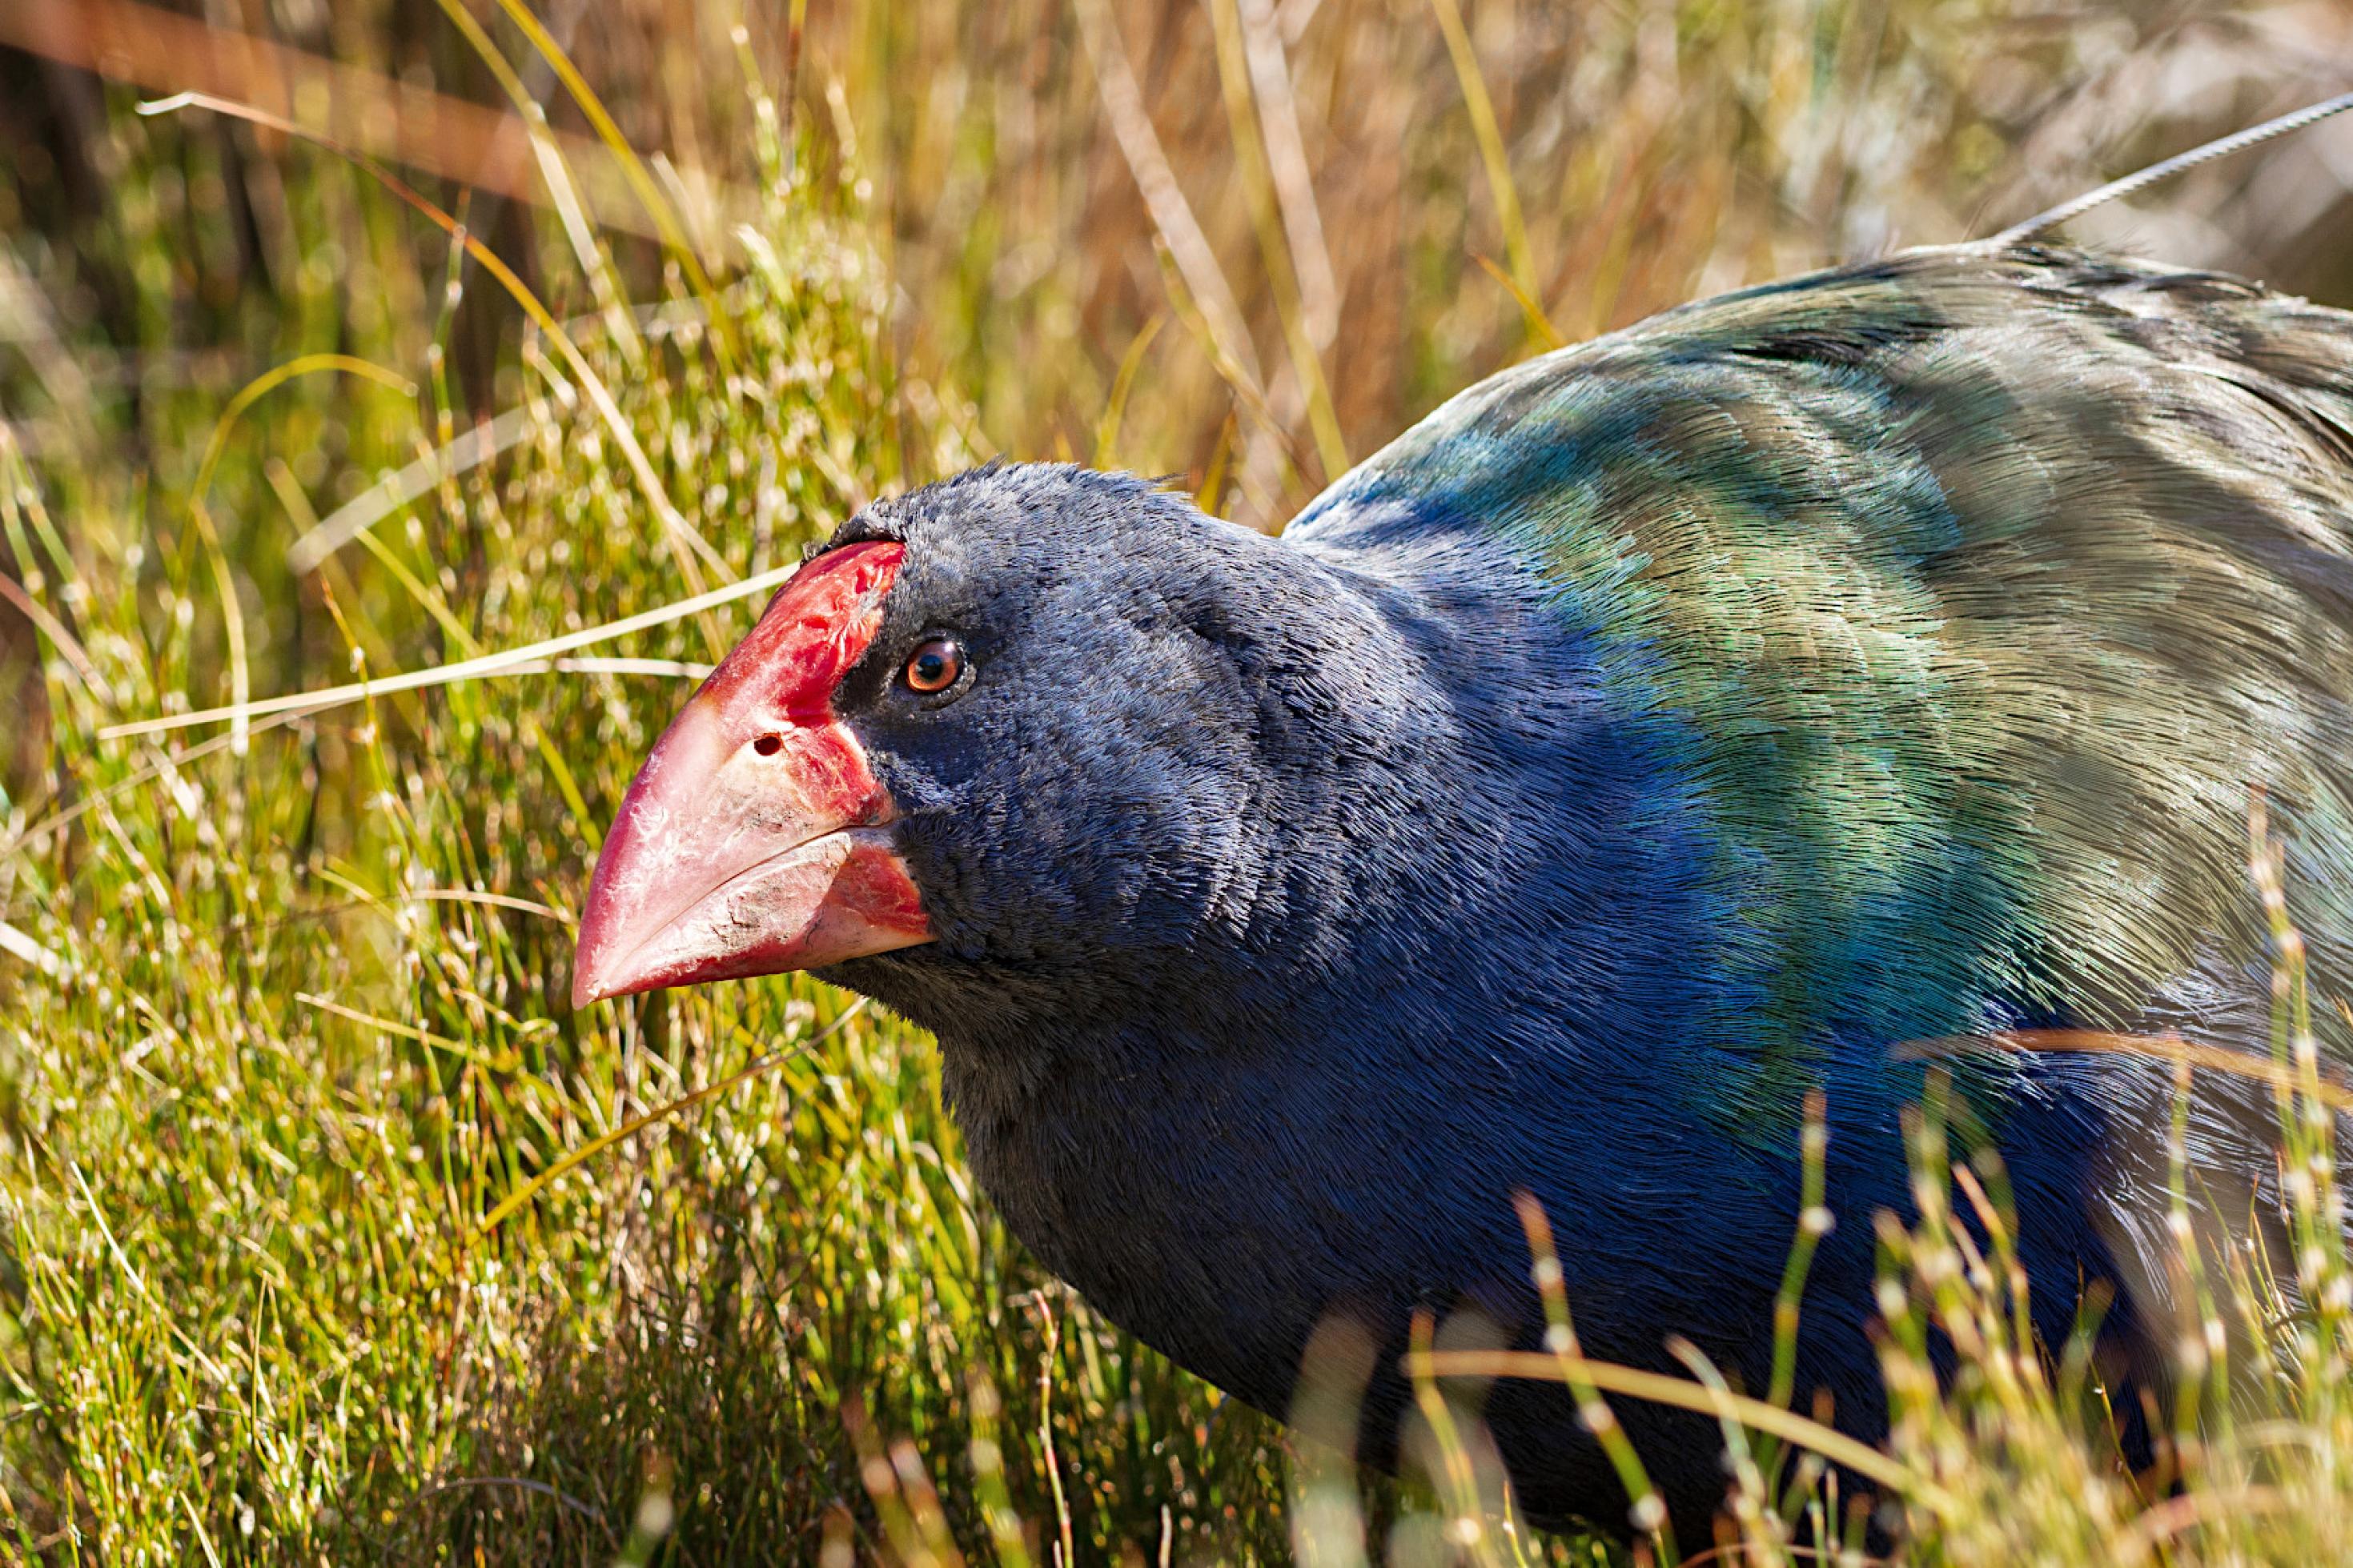 Ein blau-grüner Vogel mit rotem Schnabel läuft leicht geduckt durch hohes Gras.